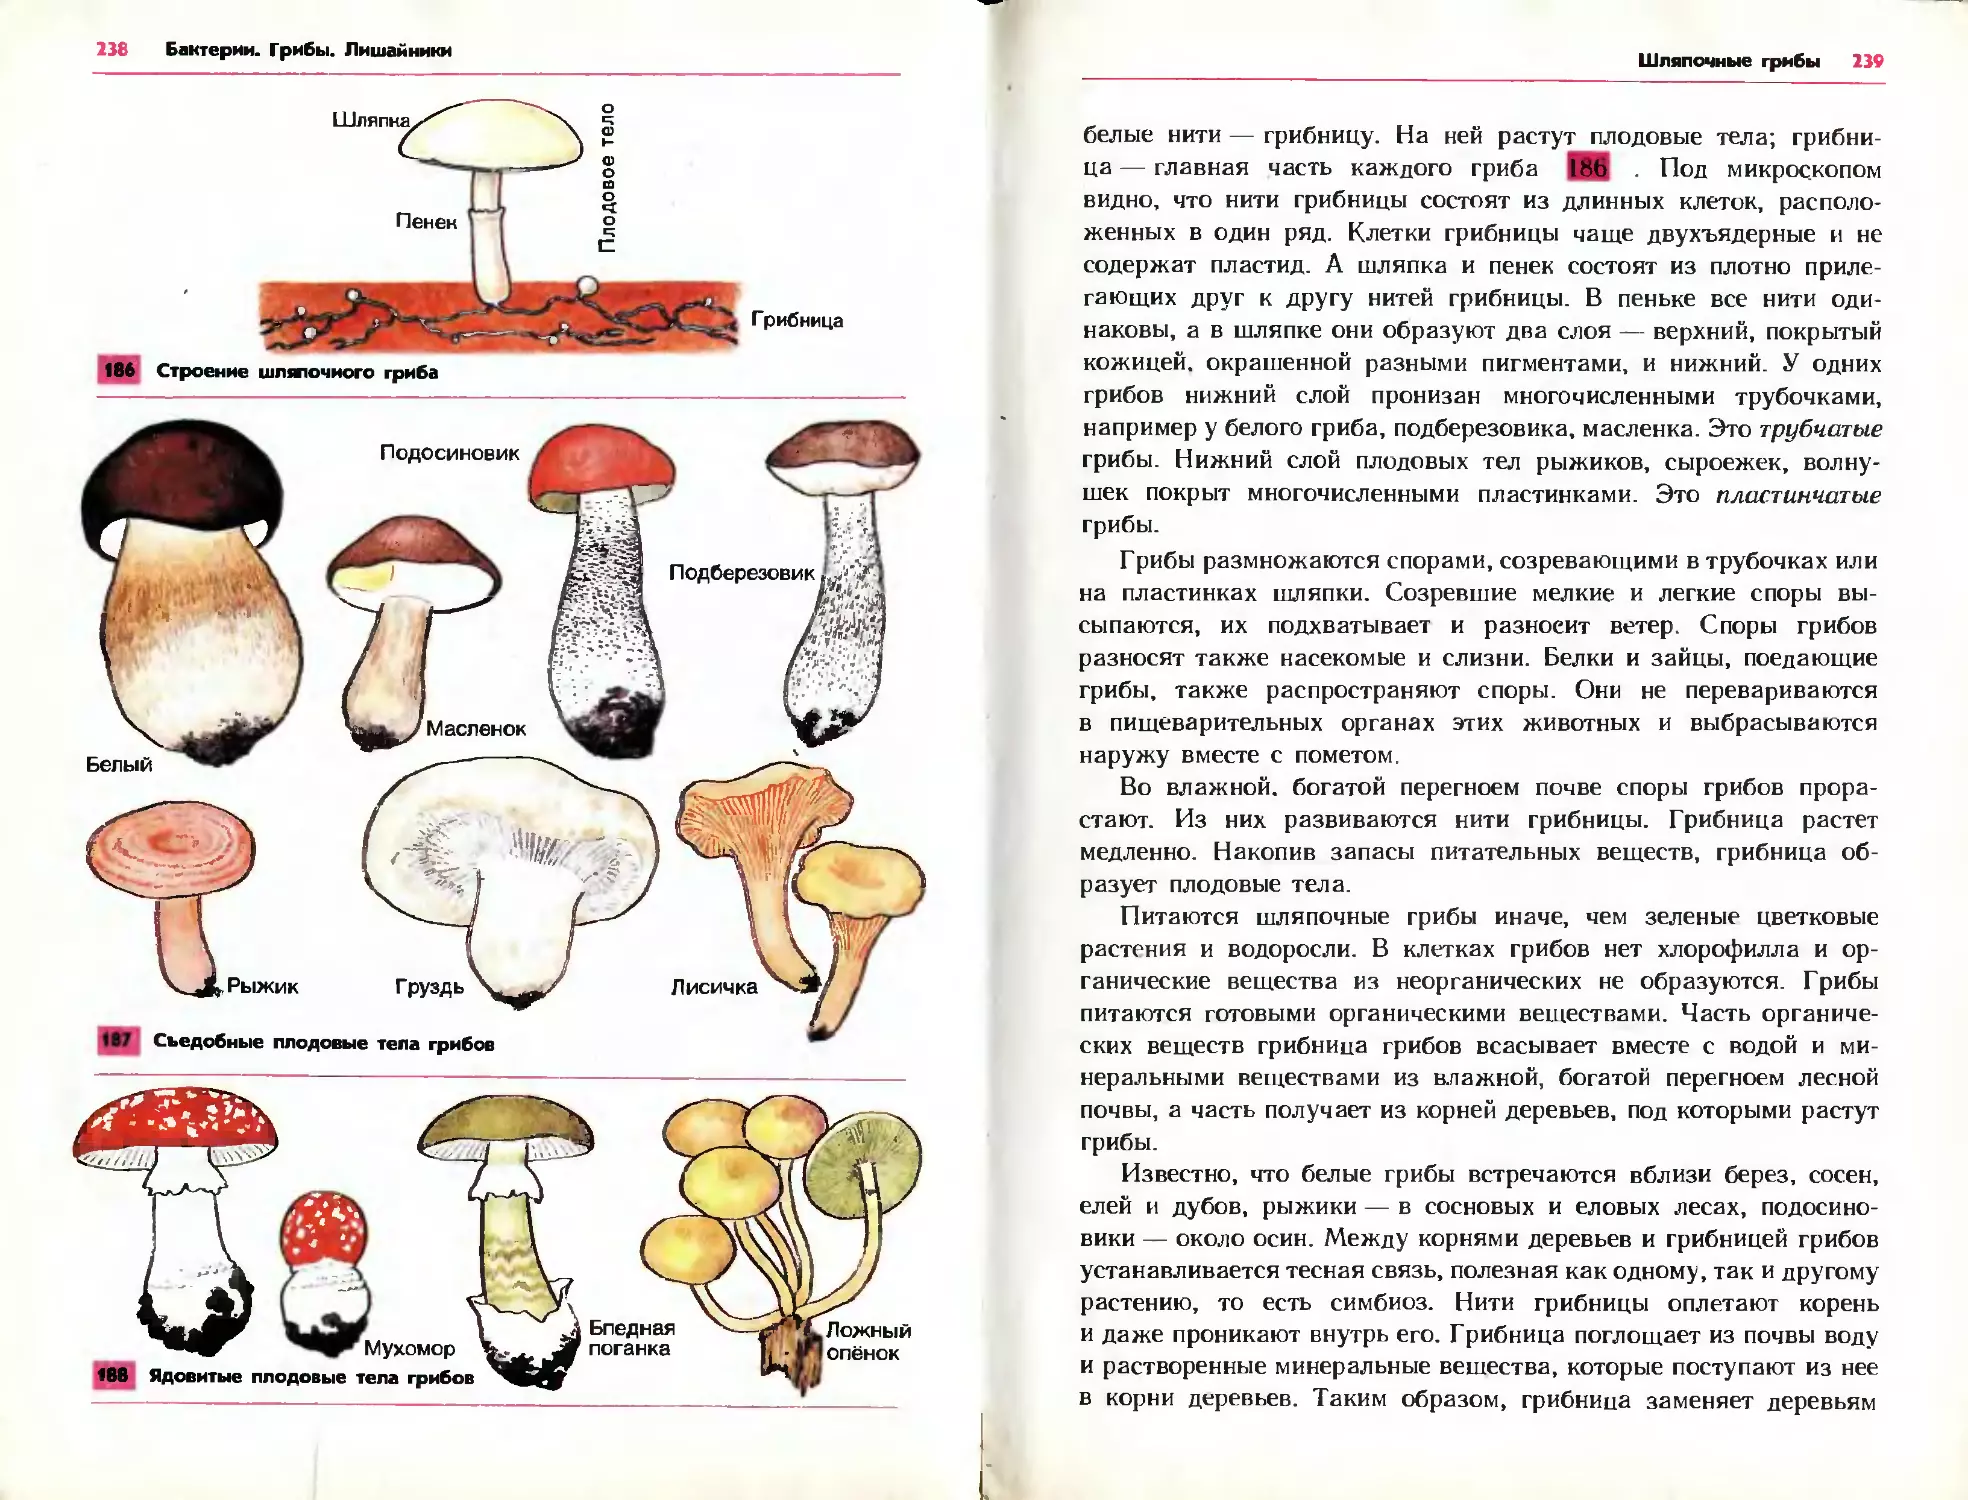 Грибы белые грибы шляпочные грибы. Споры трубчатых грибов. Шляпочные грибы. Споры у шляпочных грибов образуются. Споры на пластинках плодового тела образуются у какого гриба.